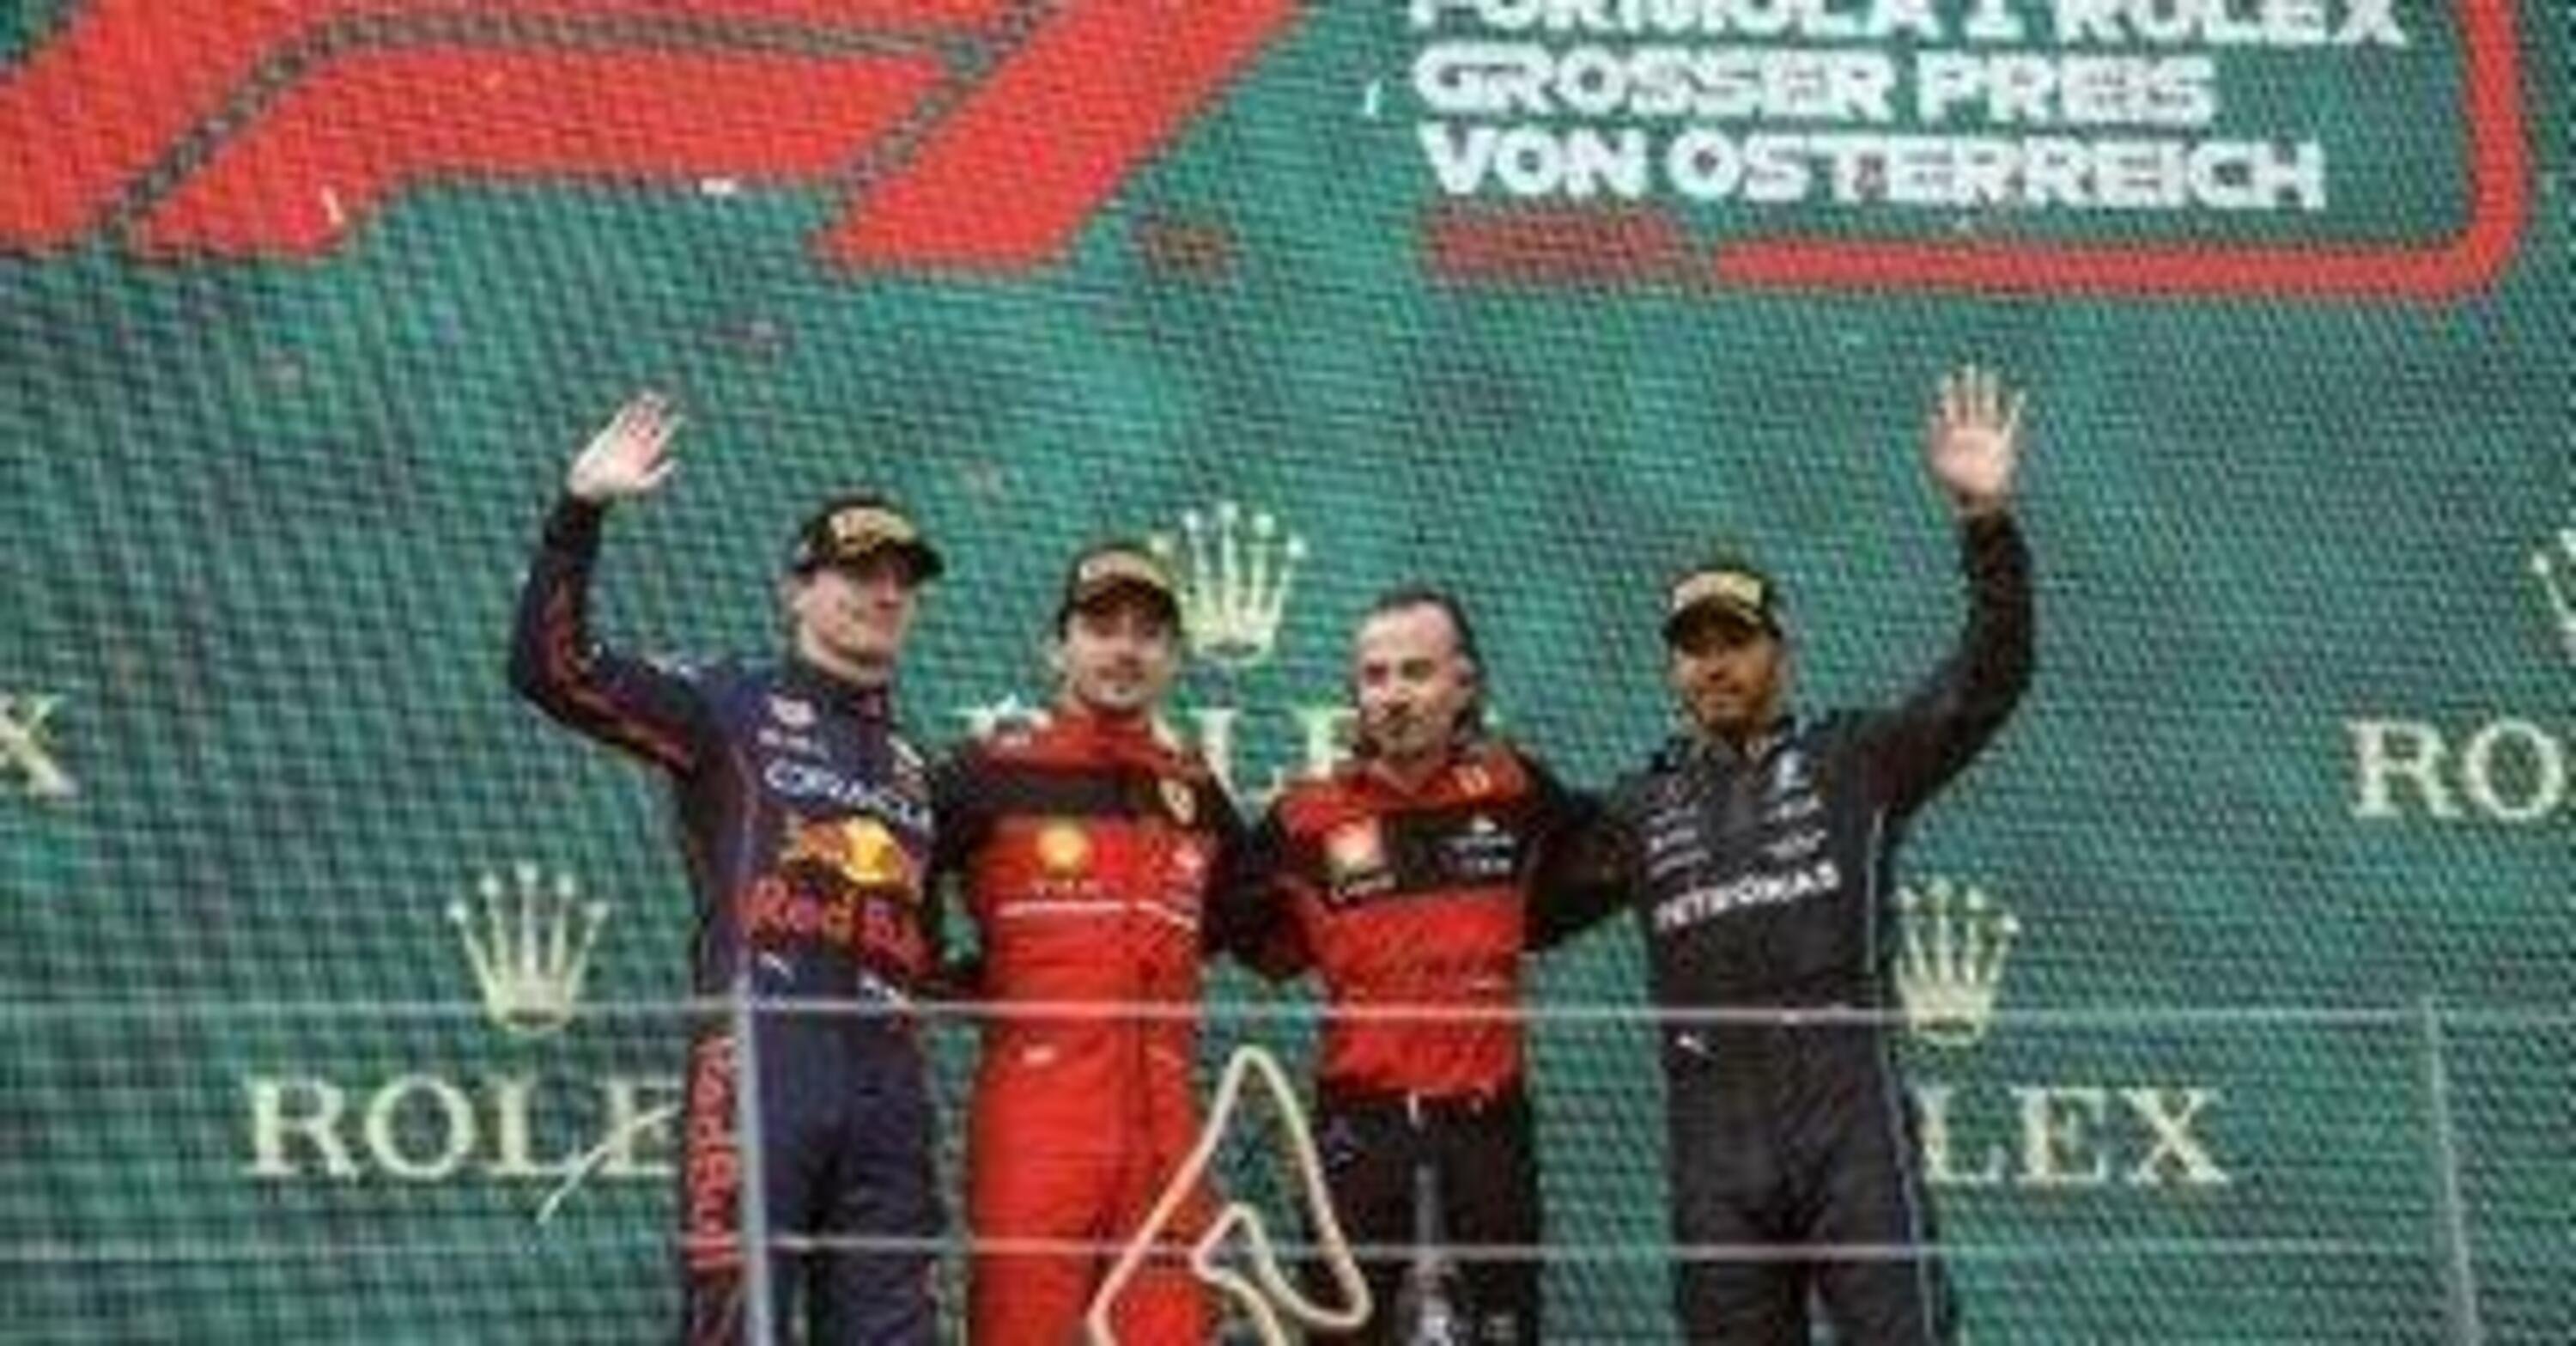 F1, GP Austria 2022: Leclerc, Verstappen e Hamilton multati di 10.000 Euro